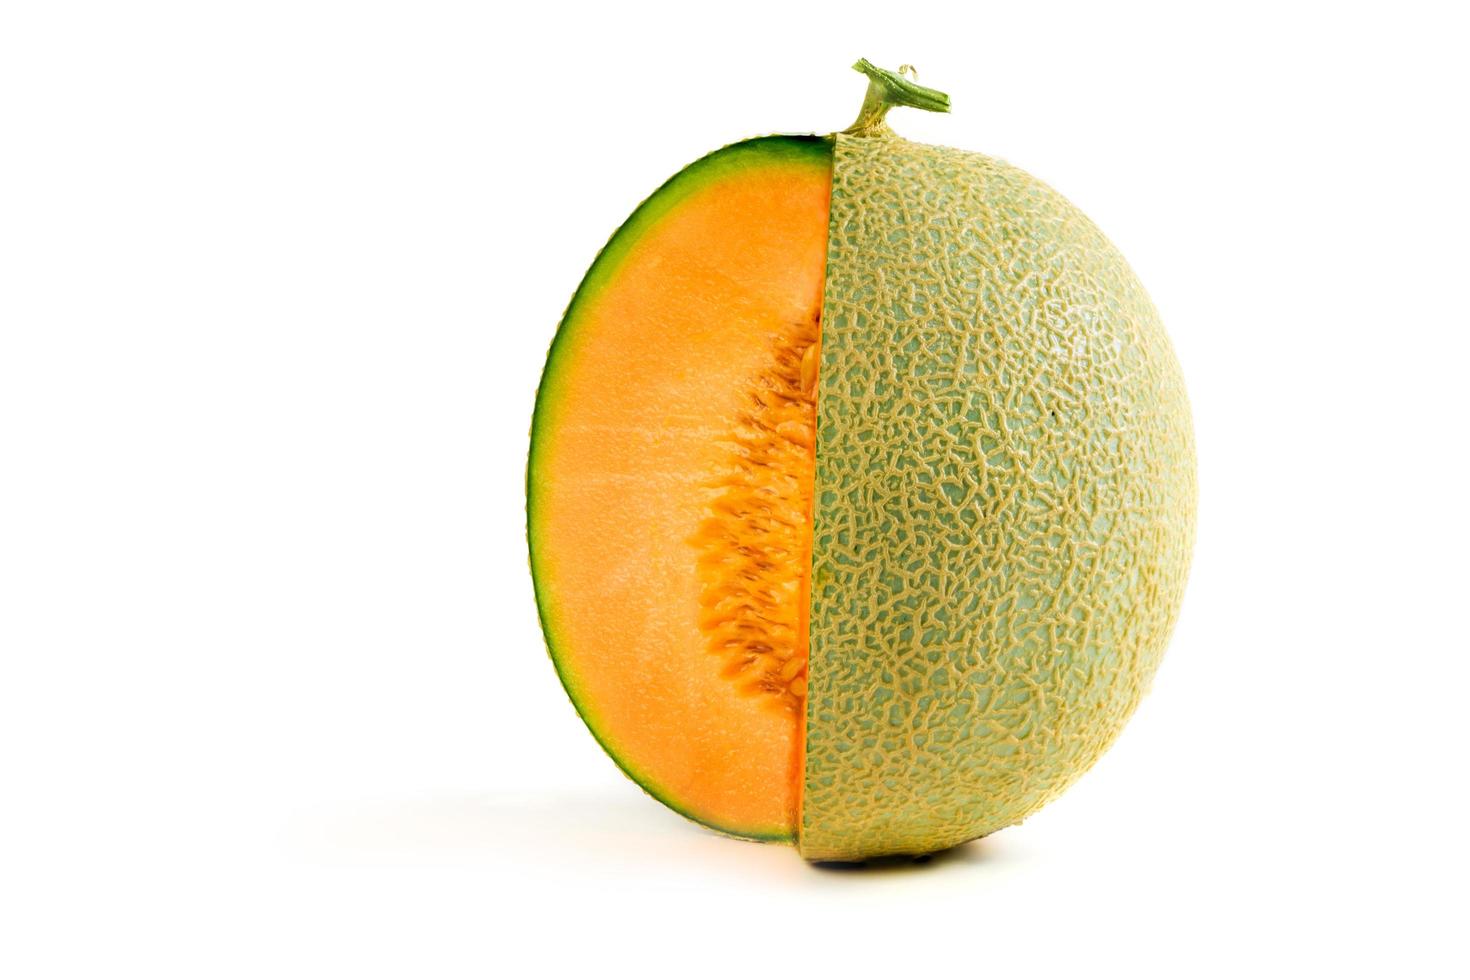 Hälfte von japanisch Melonen, Orange Melone oder Cantaloup-Melone Melone mit Saat foto